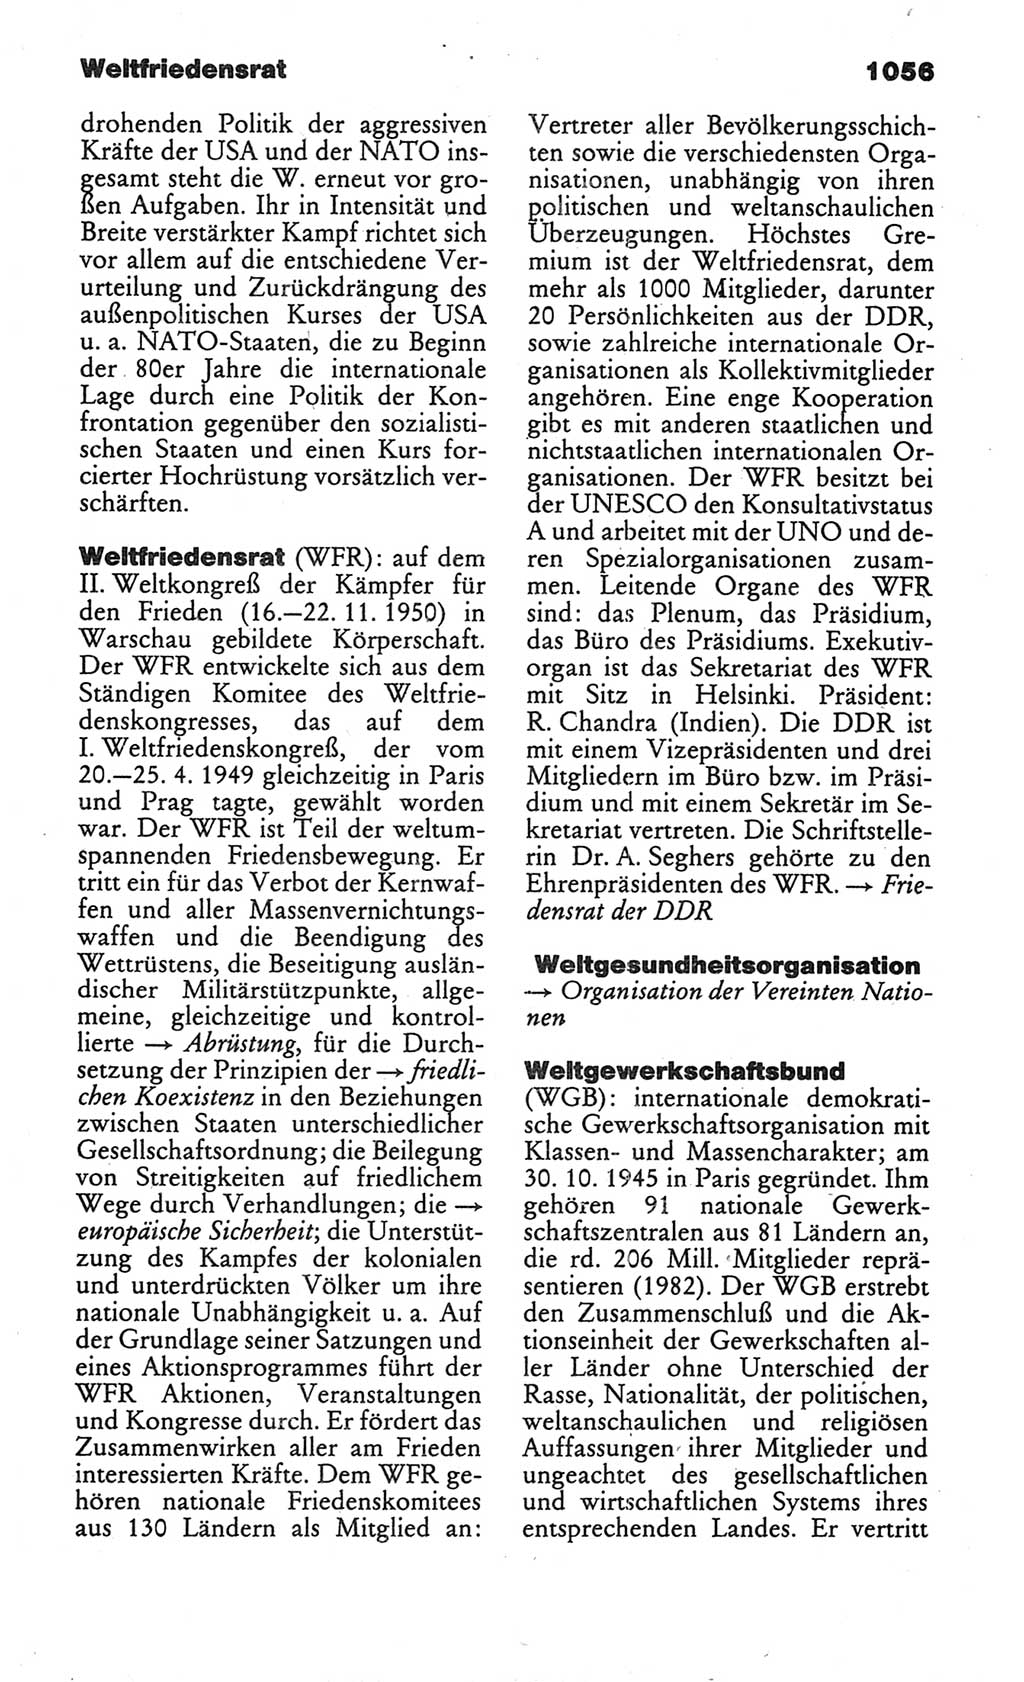 Kleines politisches Wörterbuch [Deutsche Demokratische Republik (DDR)] 1986, Seite 1056 (Kl. pol. Wb. DDR 1986, S. 1056)